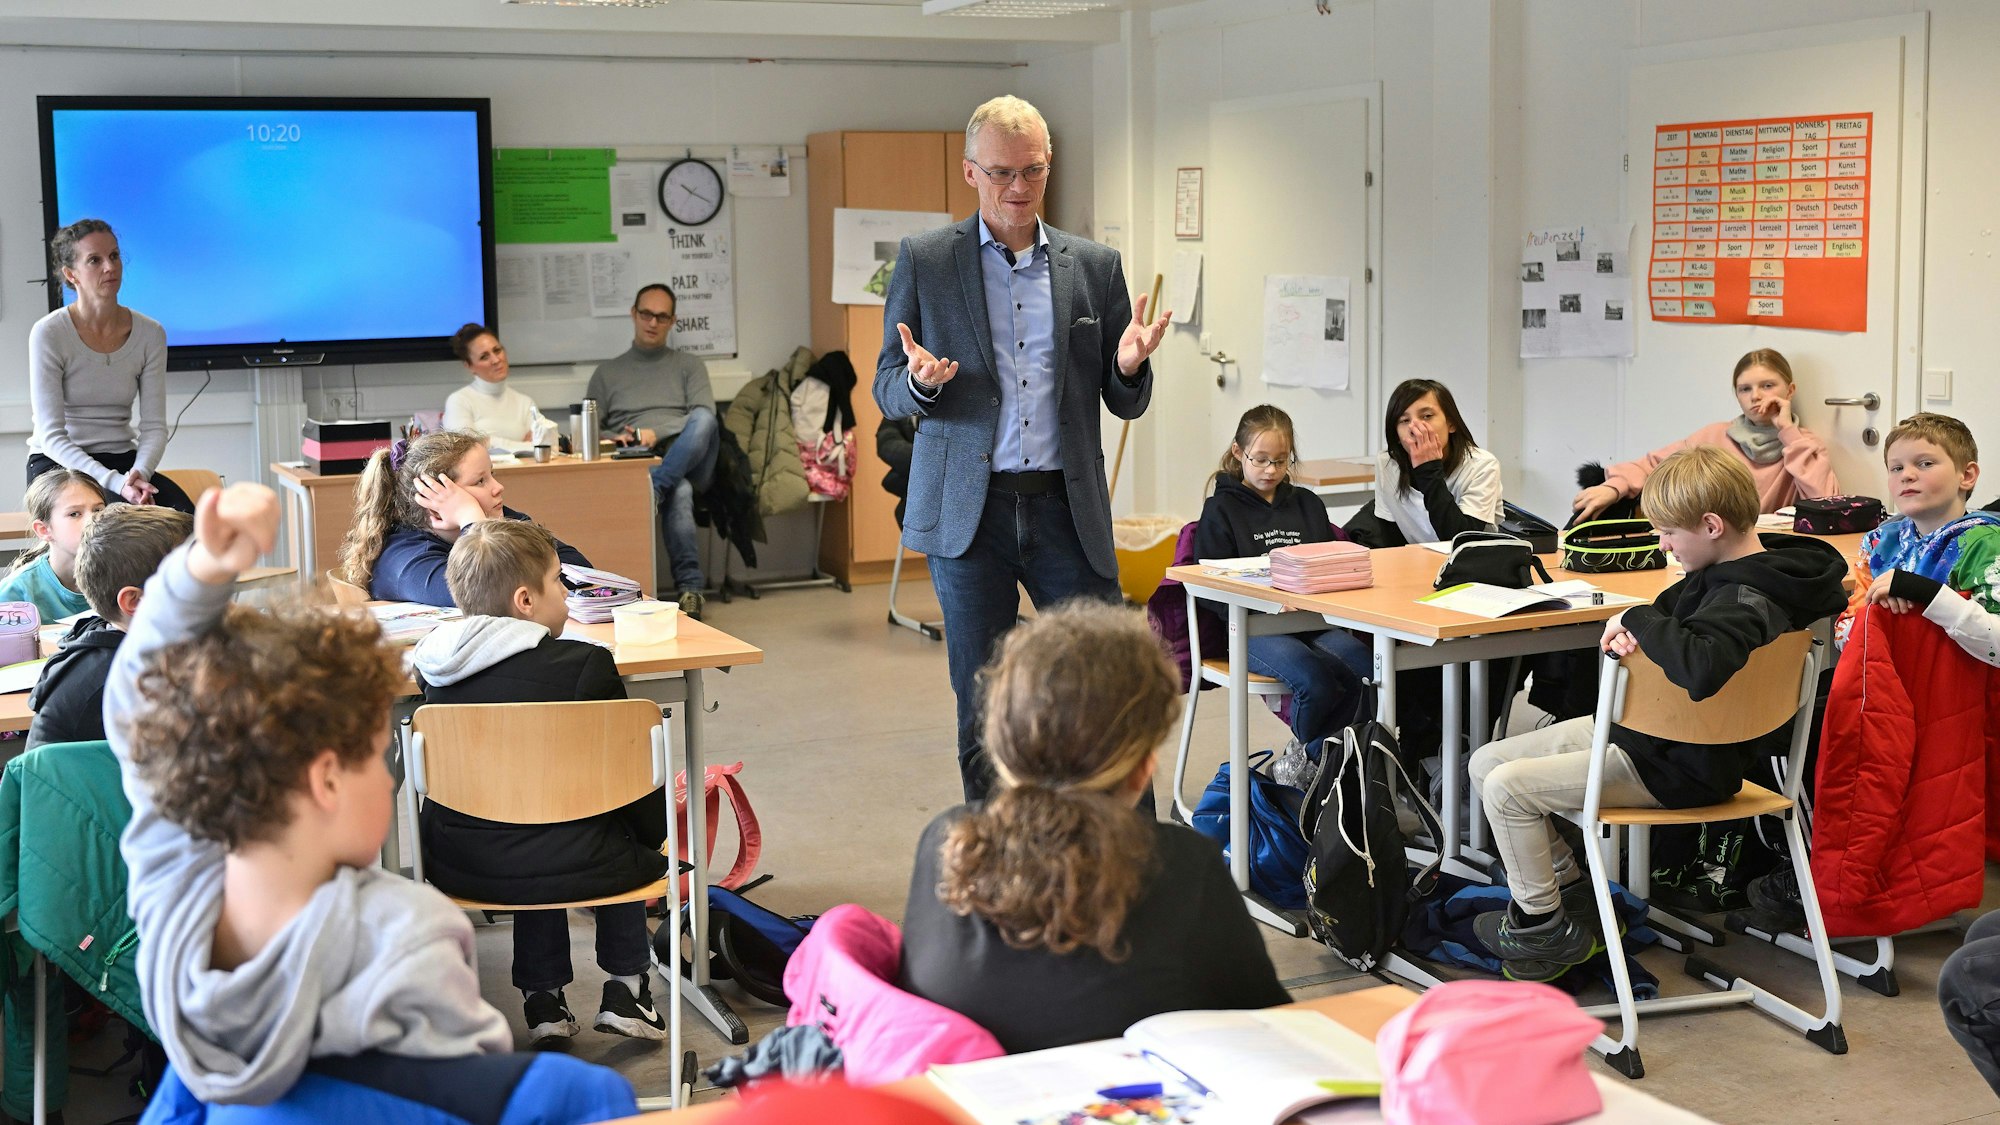 Das Foto zeigt Bürgermeister Frank Stein zu Besuch beim Friedenstag an der Paffrather Gesamtschule. Stein diskutiert mit Schülern.